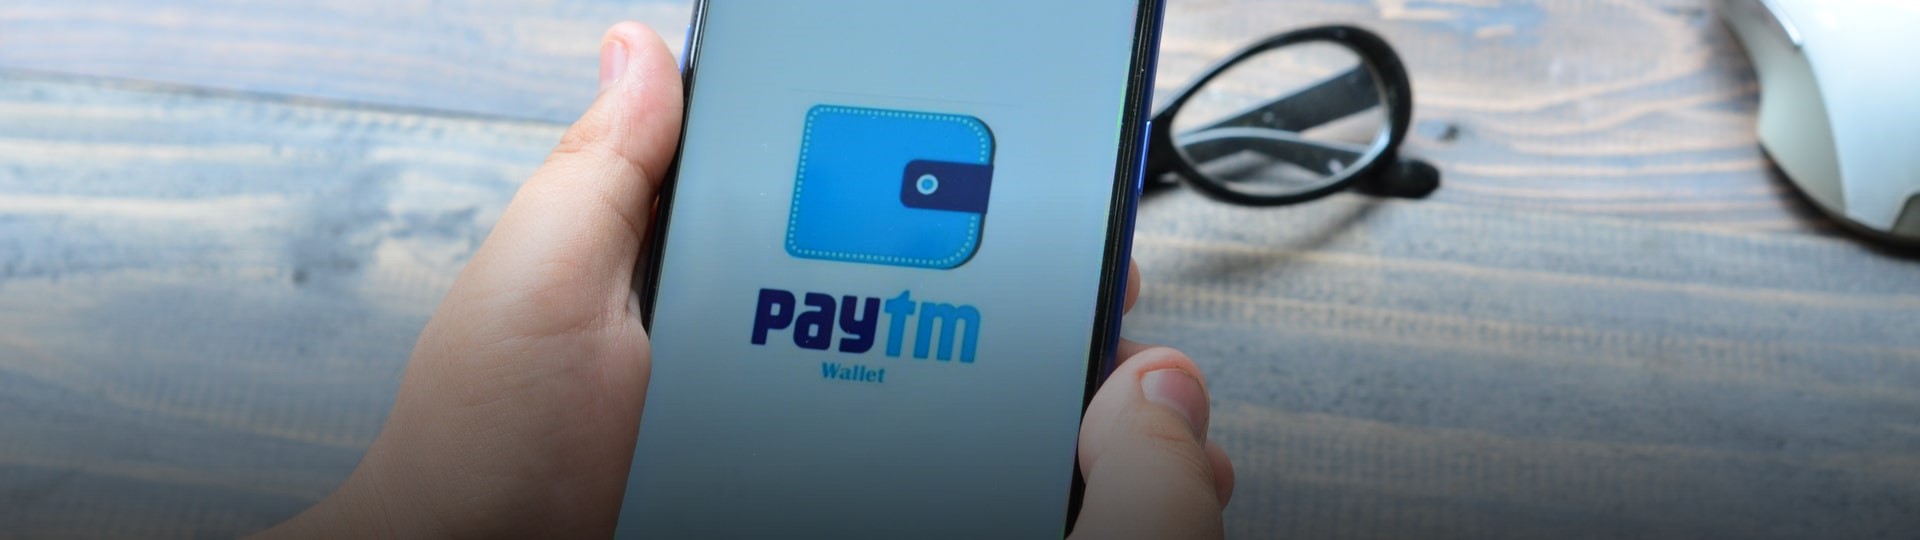 Indický poskytovatel digitálních plateb Paytm chystá rekordní nabídku akcií